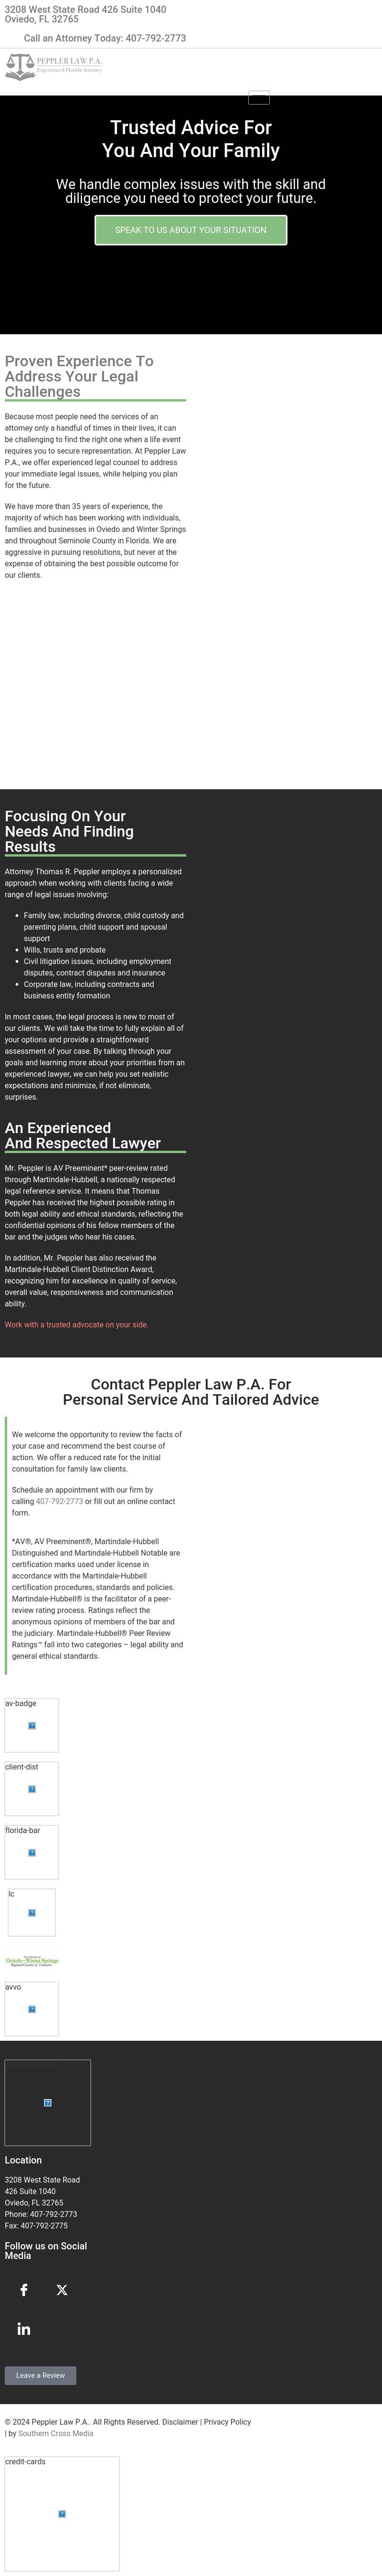 Peppler Law P.A. - Oviedo FL Lawyers